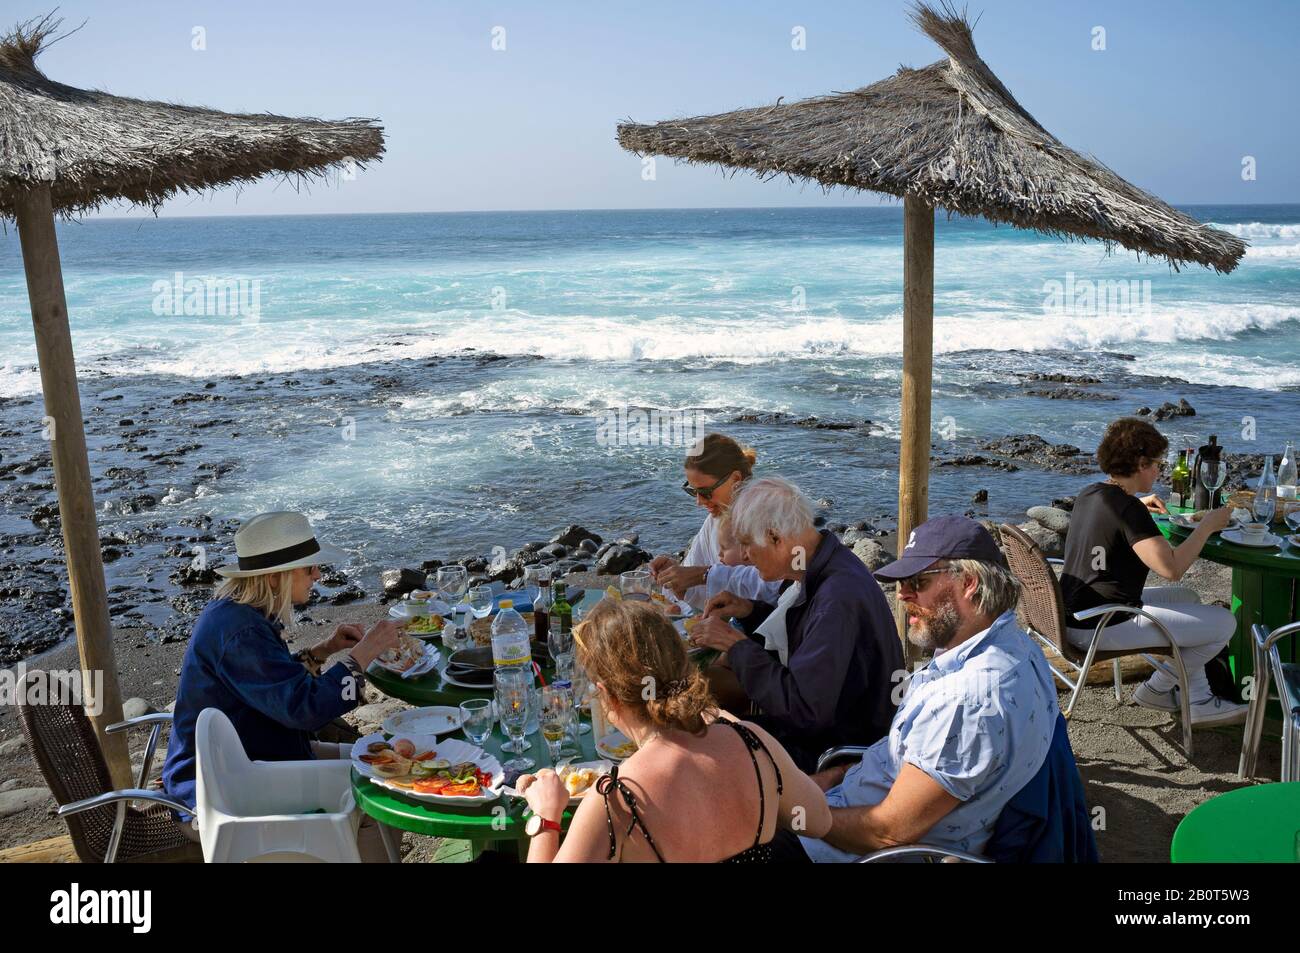 Un famoso ristorante di pesce a El Golfo, Lanzarote Foto stock - Alamy